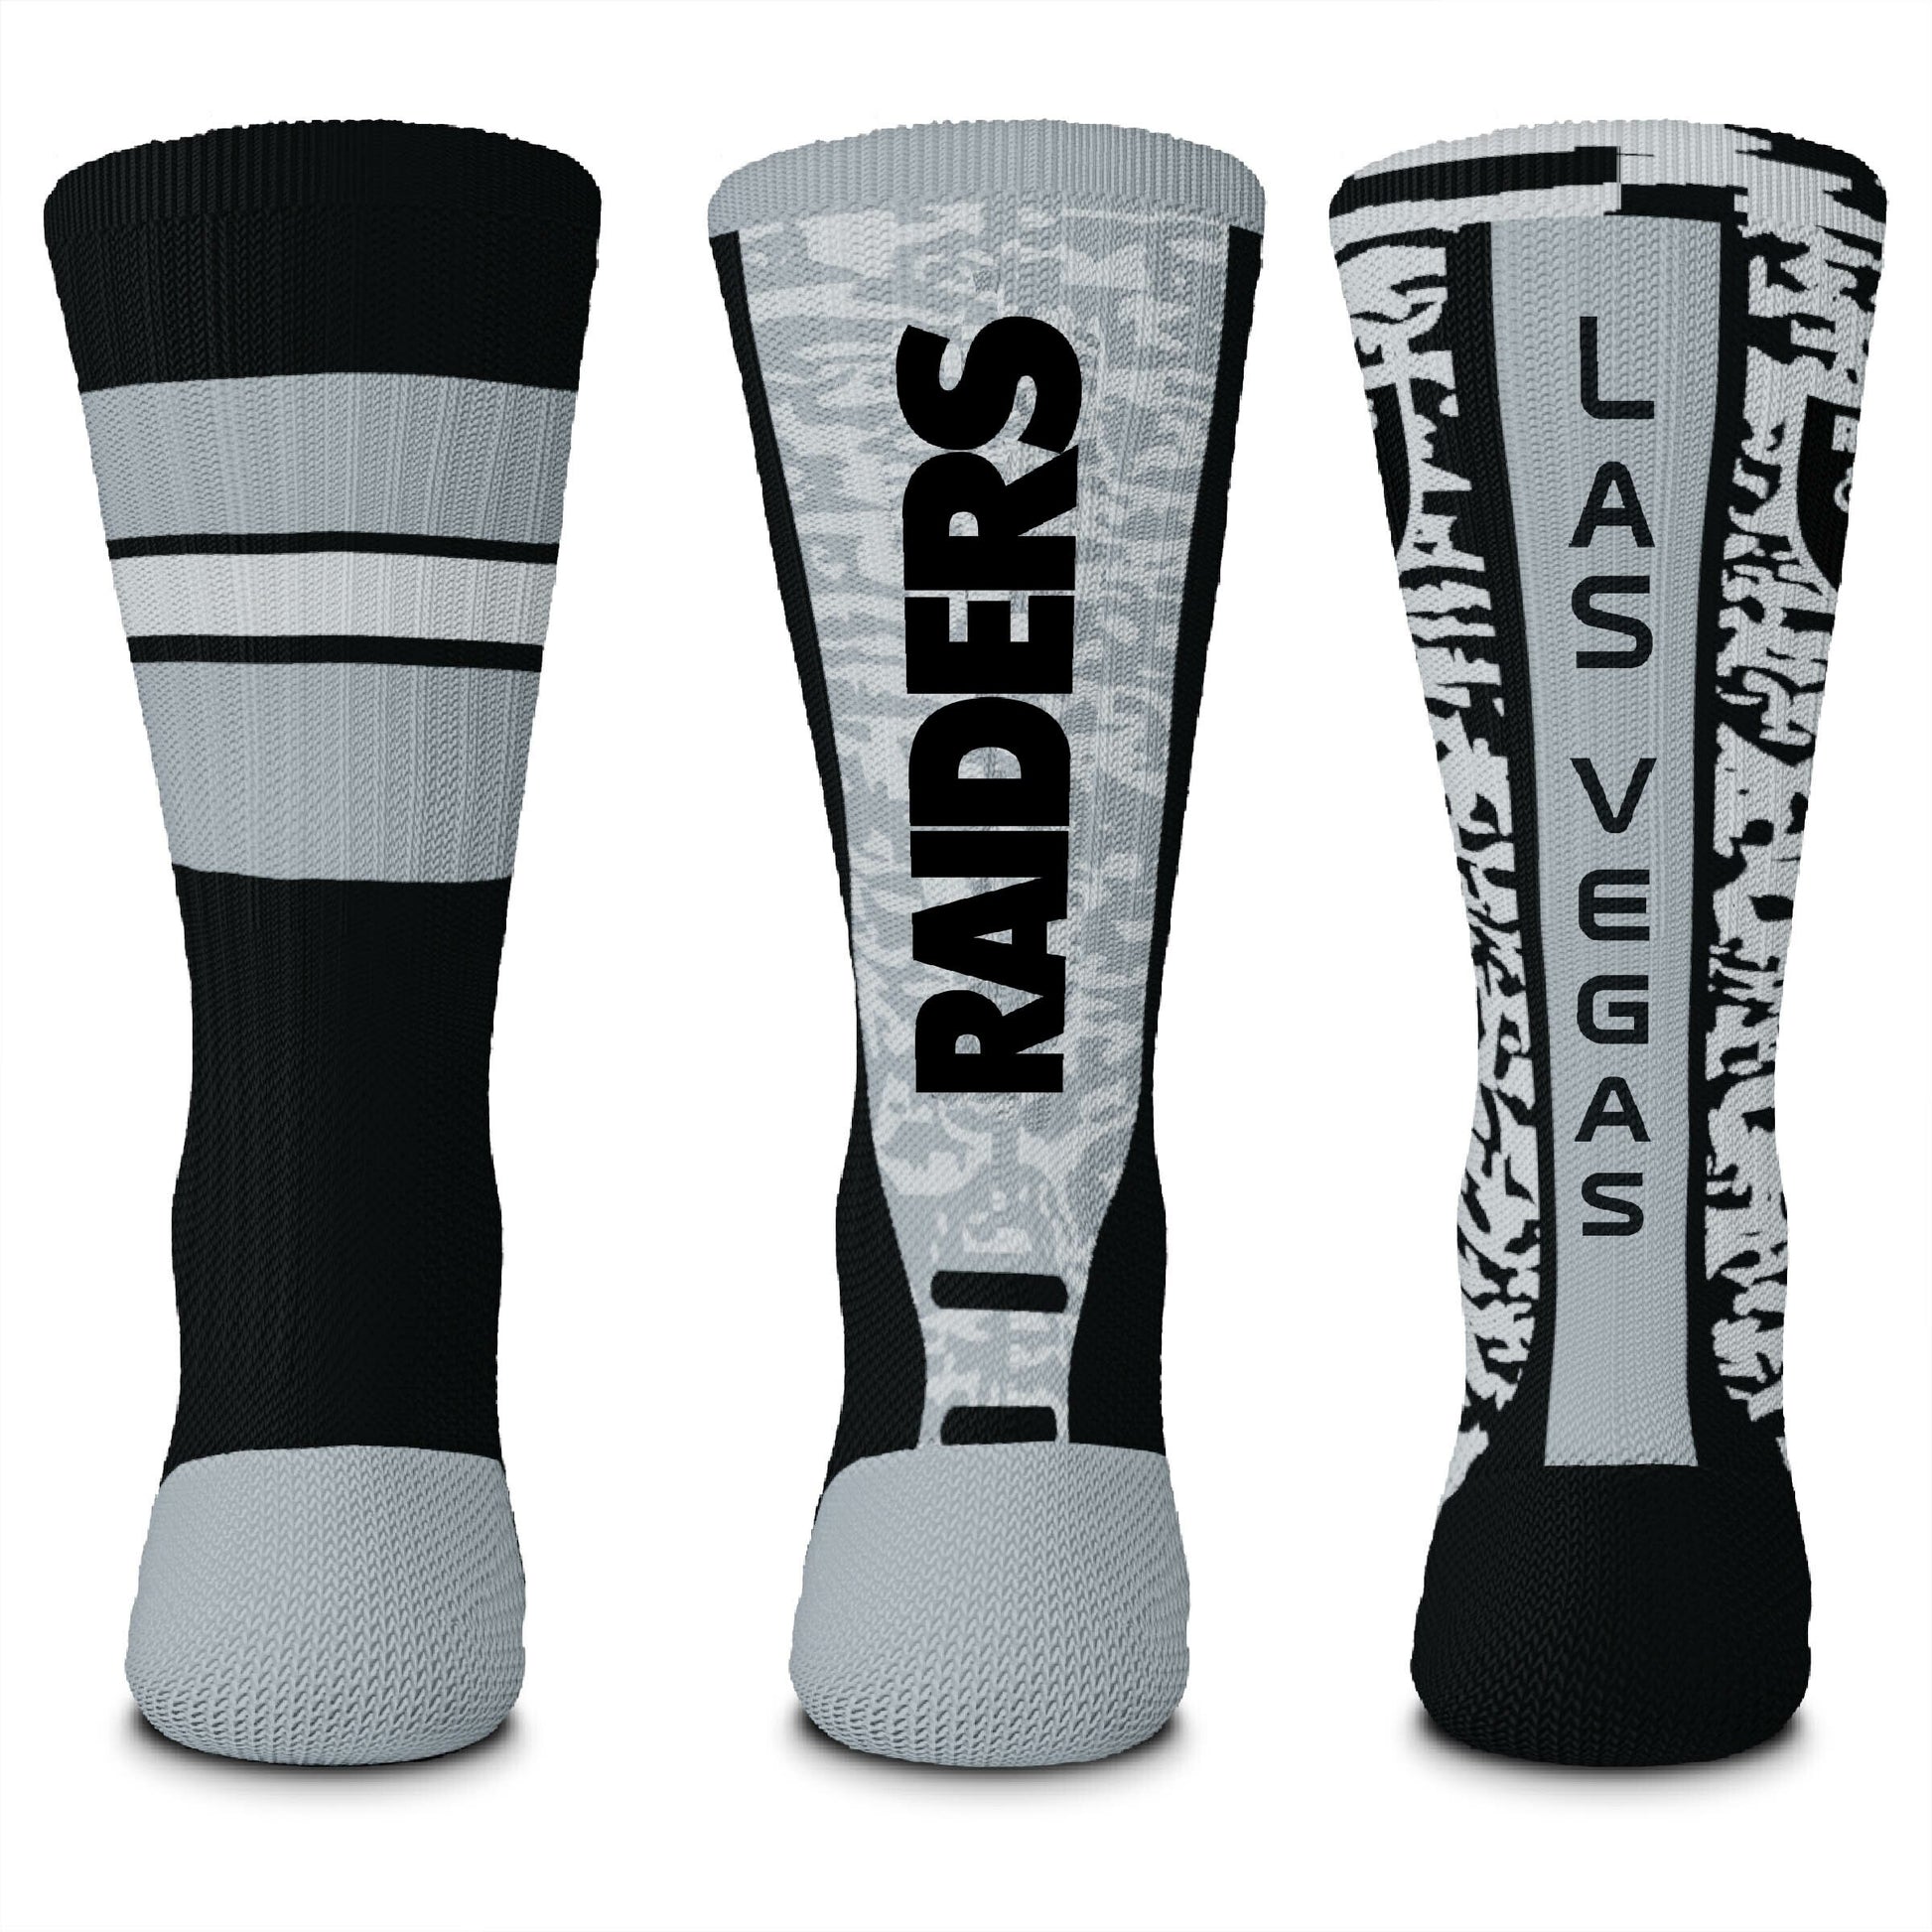 Las Vegas Raiders Stimulus Socks